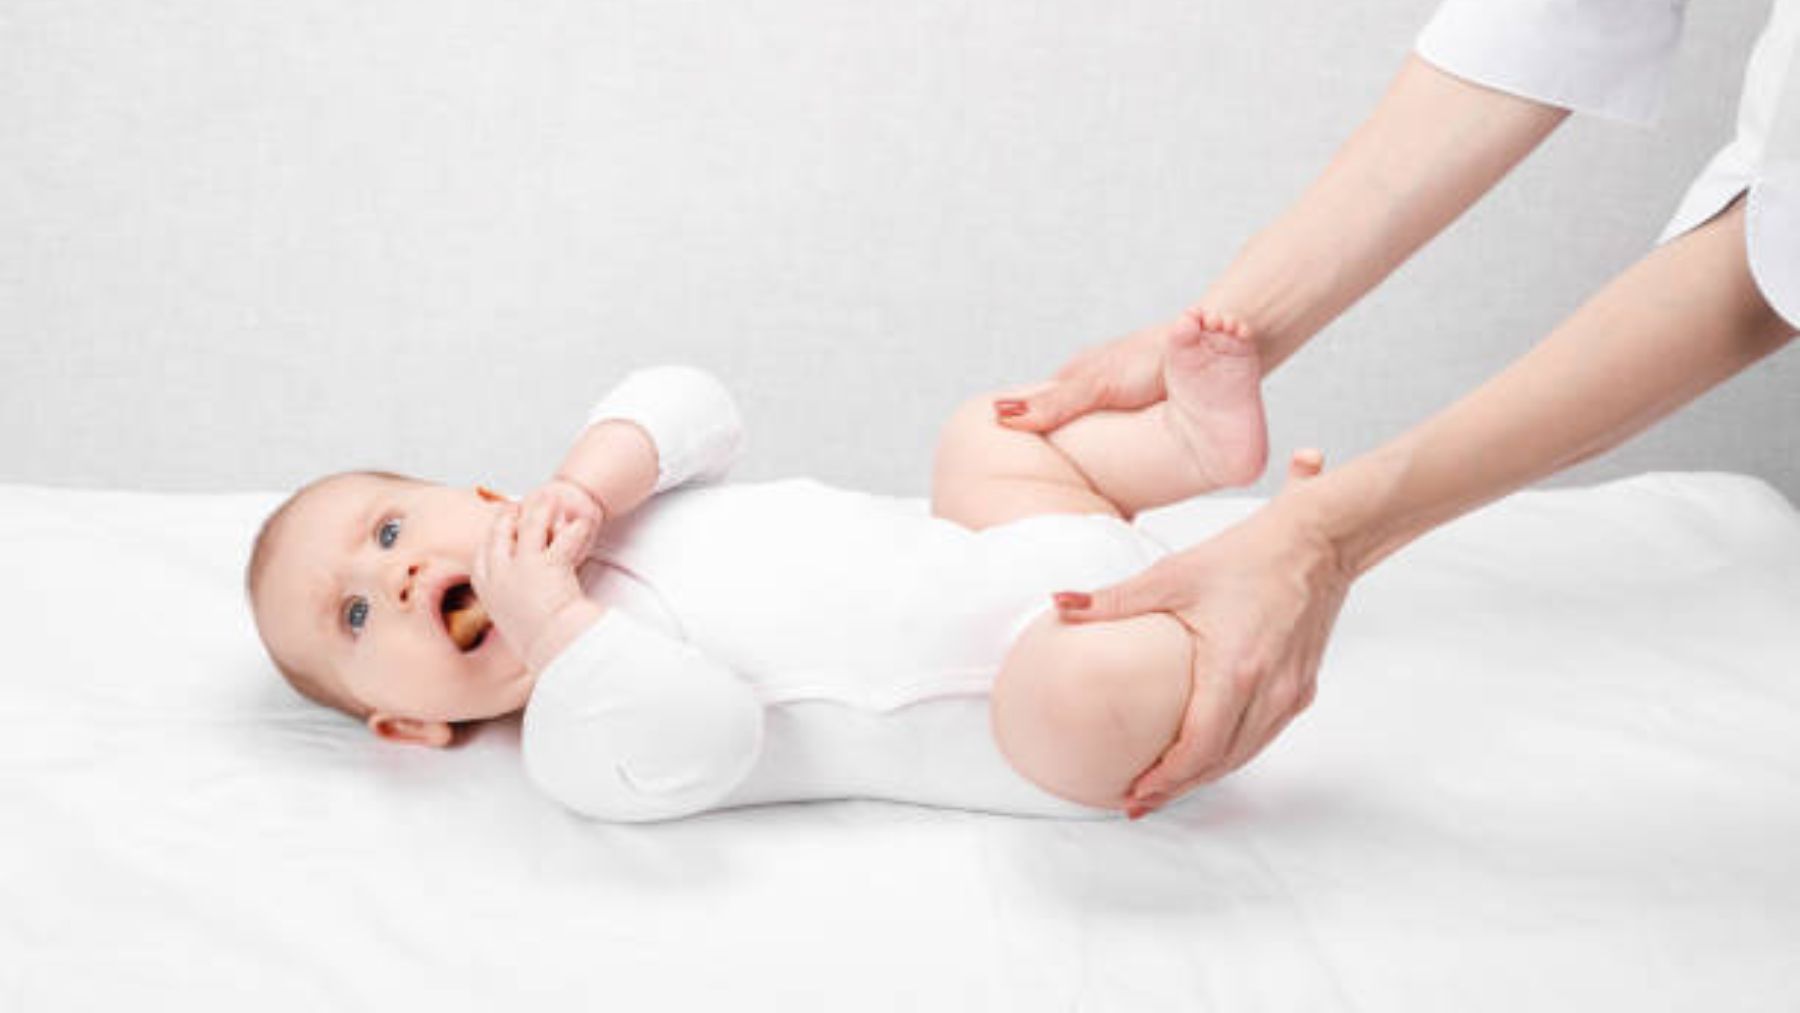 Descubre más sobre la displasia de cadera en los bebés y cómo tratar